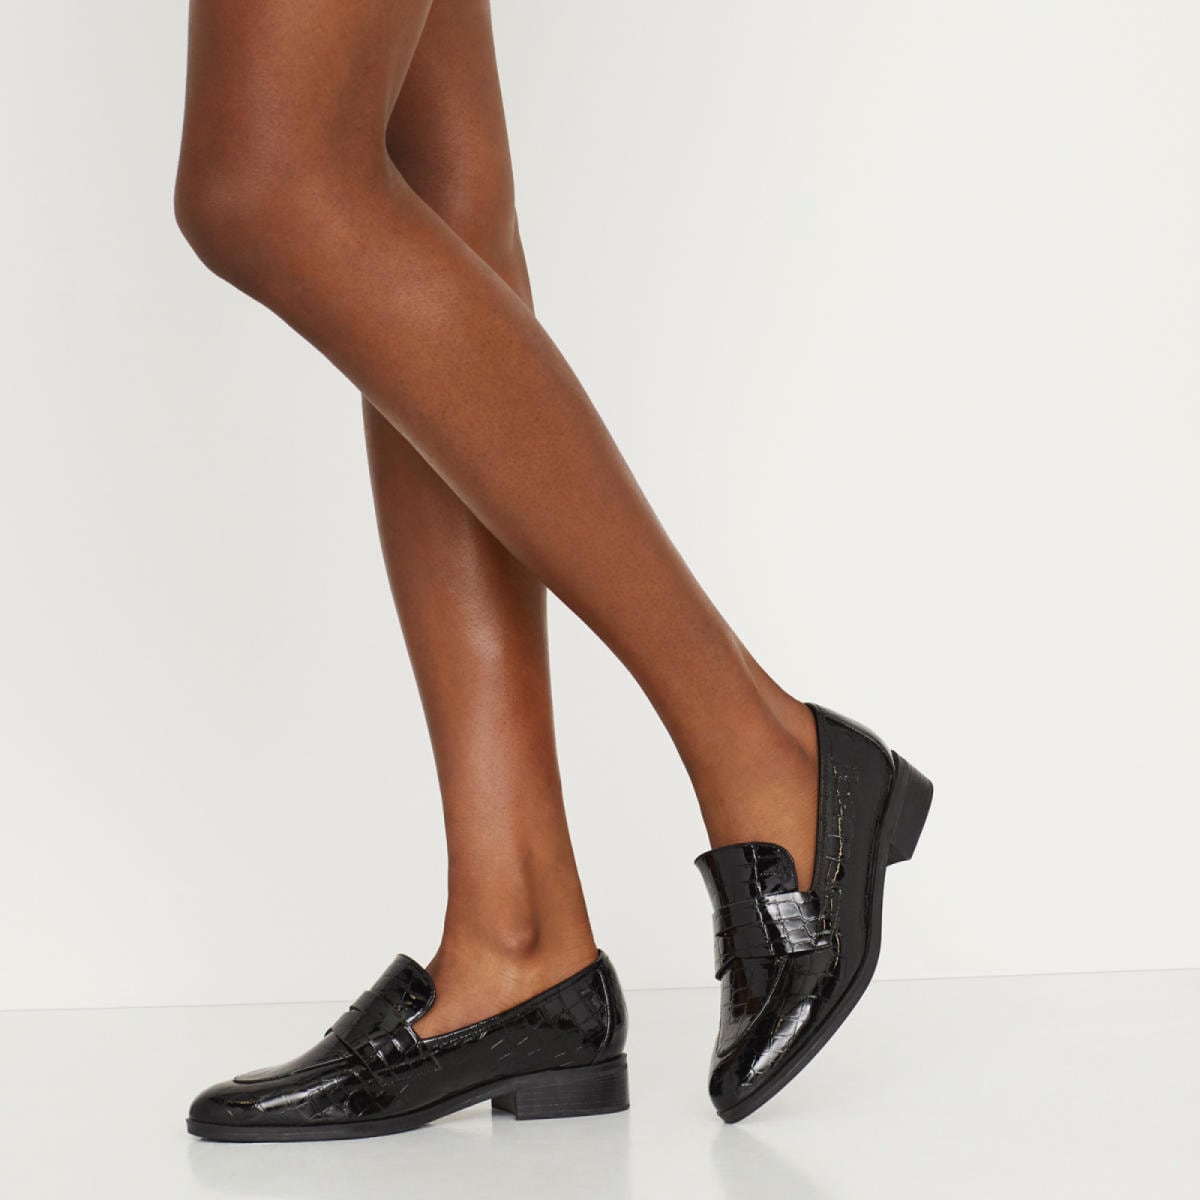 aldo shoes women's loafers